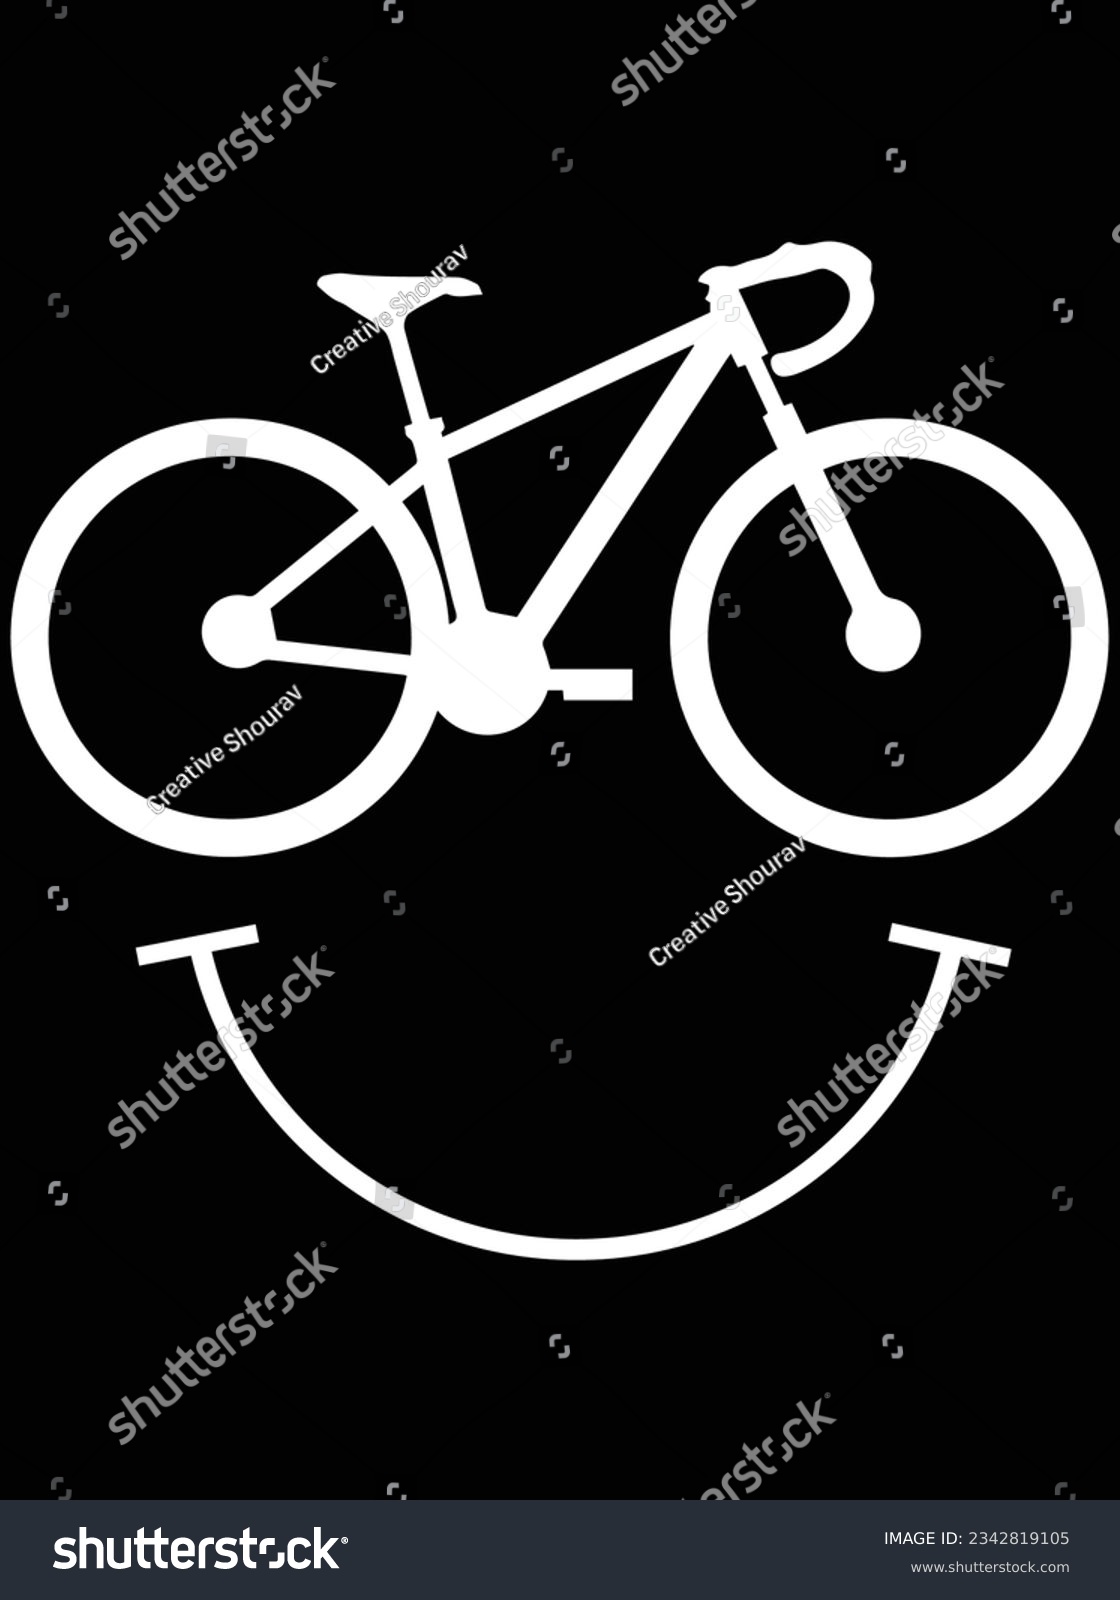 SVG of Cyclist smile vector art design, eps file. design file for t-shirt. SVG, EPS cuttable design file svg